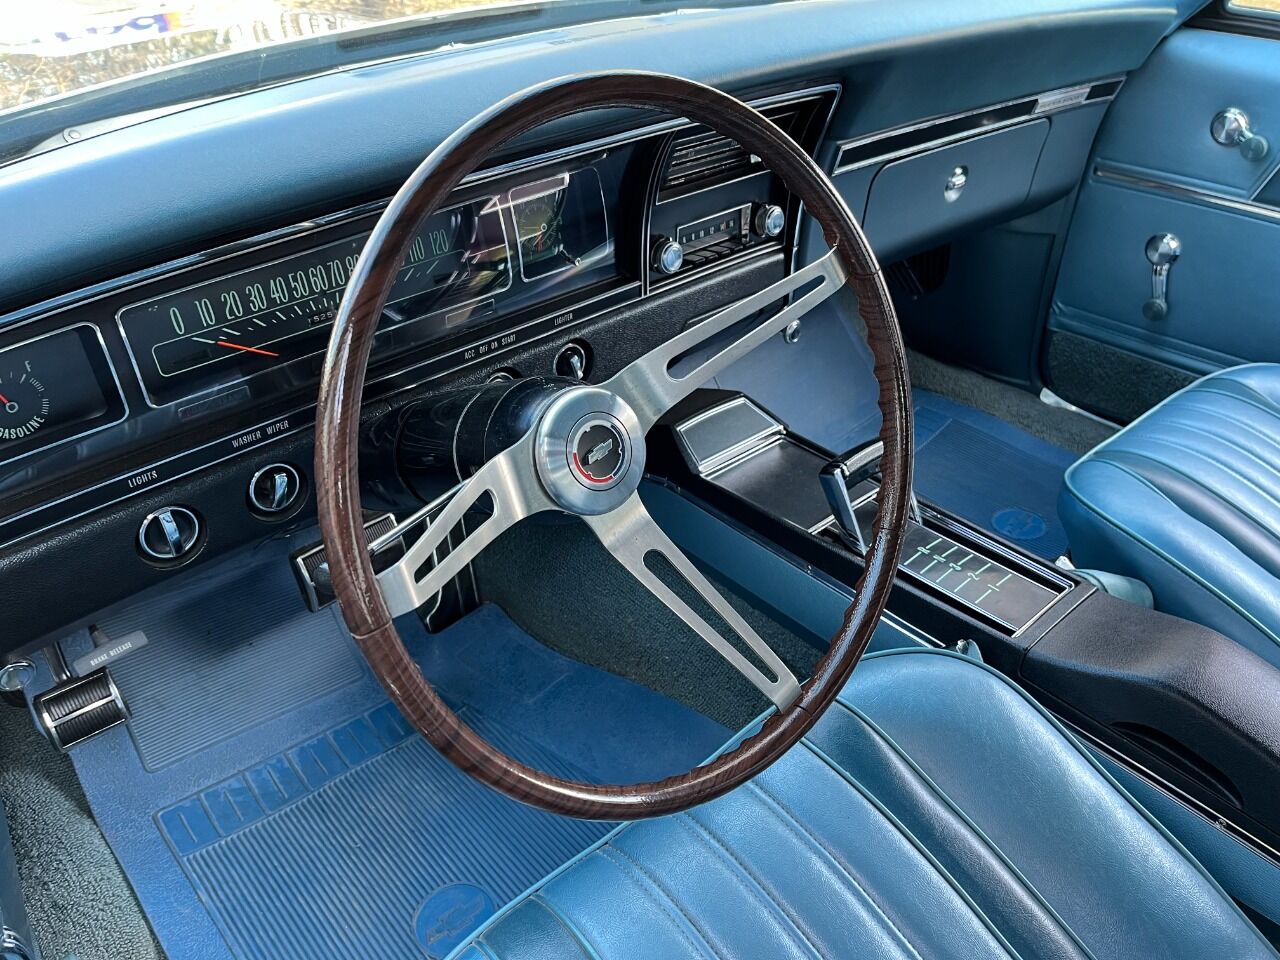 1968 Chevrolet Impala 155